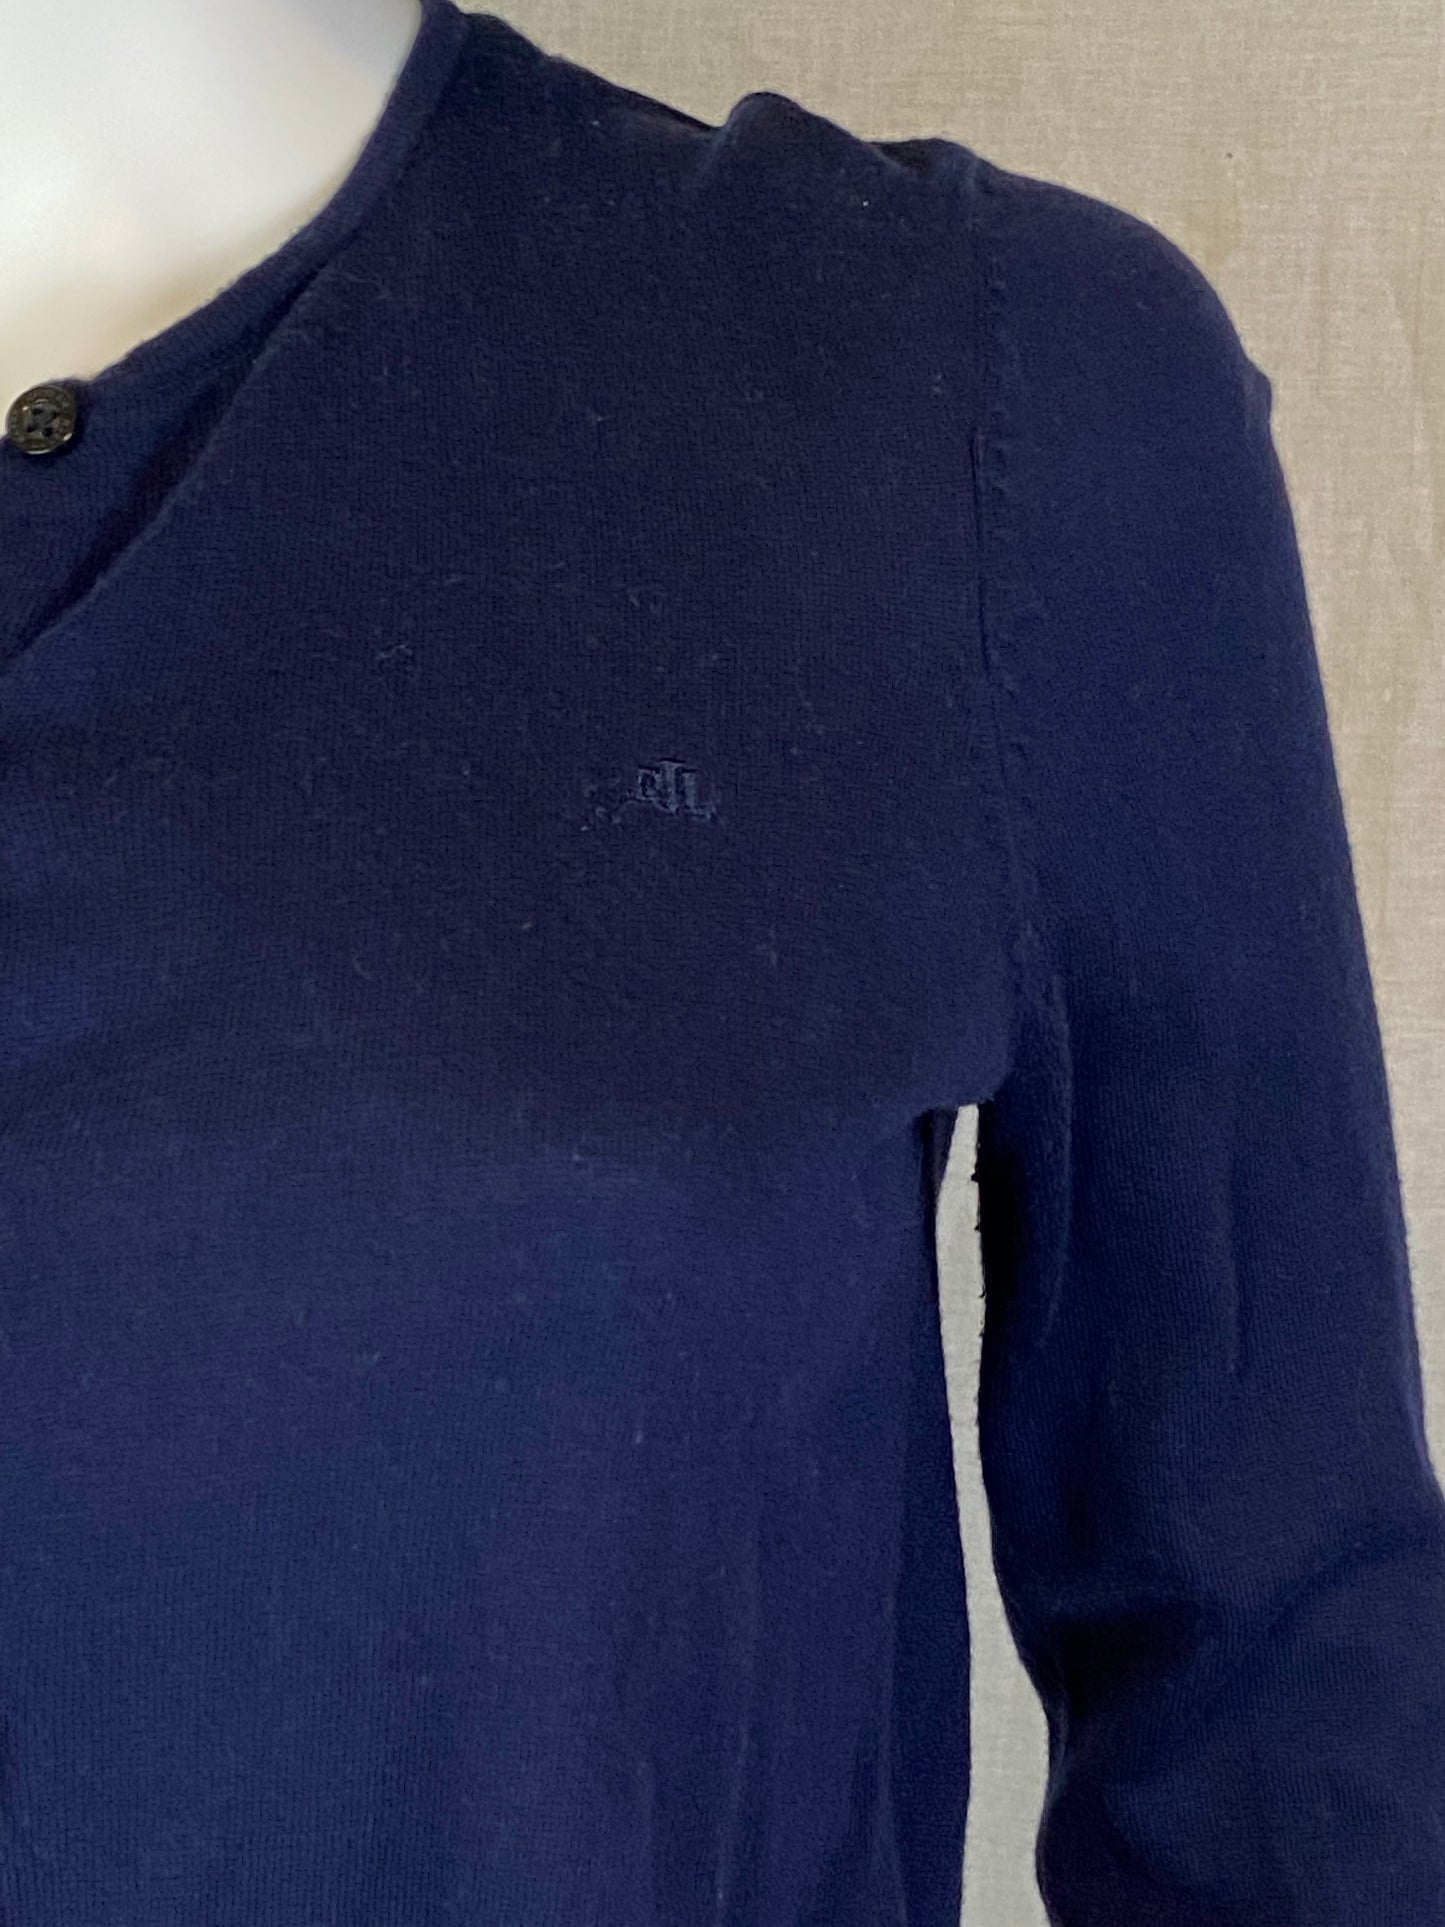 LAUREN Ralph Lauren Navy Blue Sweater Cardigan M